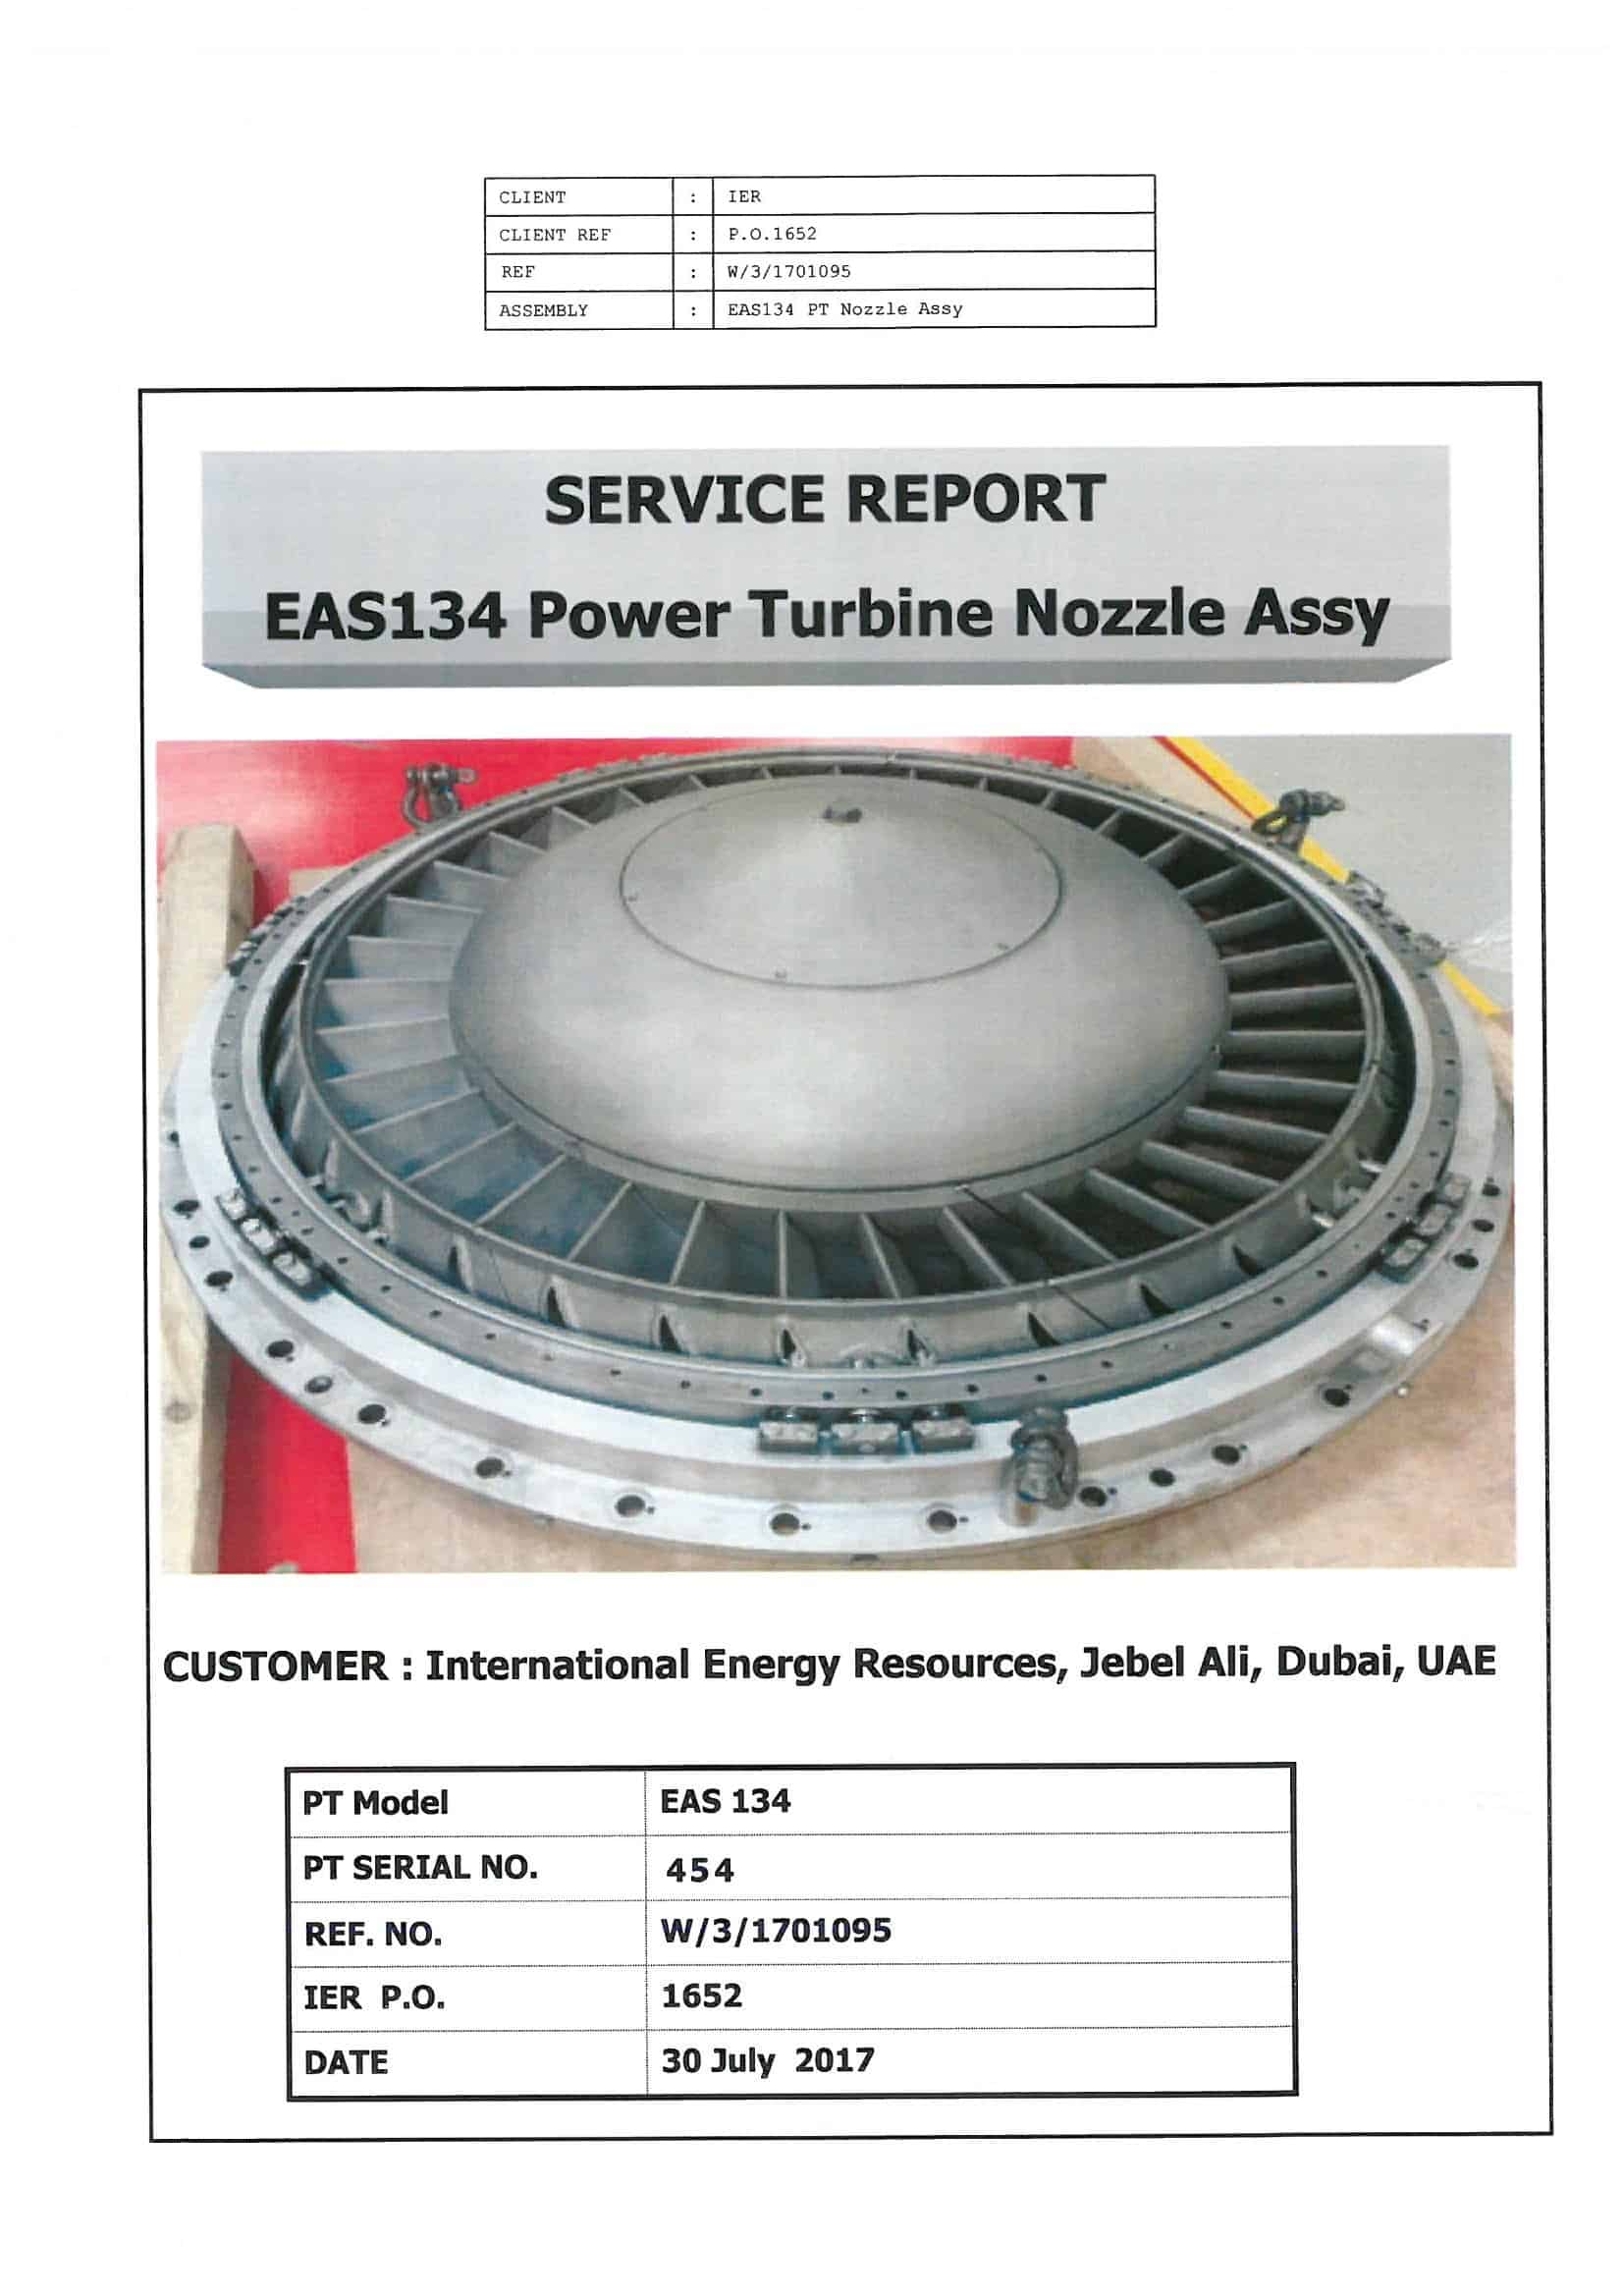 https://ierfzco.com/wp-content/uploads/2020/04/Service-Report-EAS134-PT-Nozzle-Assy-GT454_Page_01.jpg